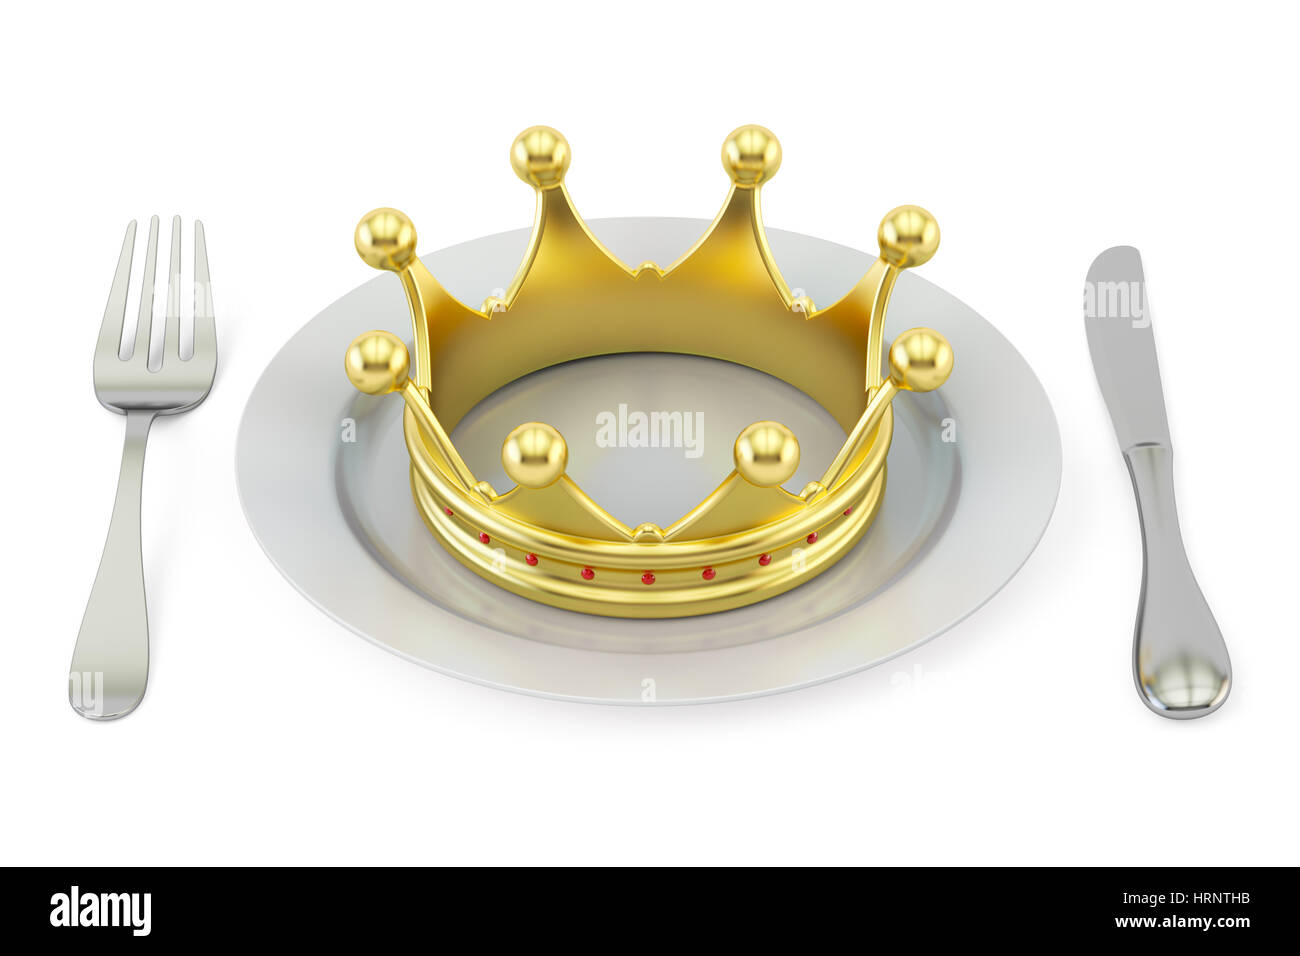 Goldene Krone auf einem Teller mit Messer und Gabel. Königliche Küche Konzept. 3D-Rendering isoliert auf weißem Hintergrund Stockfoto